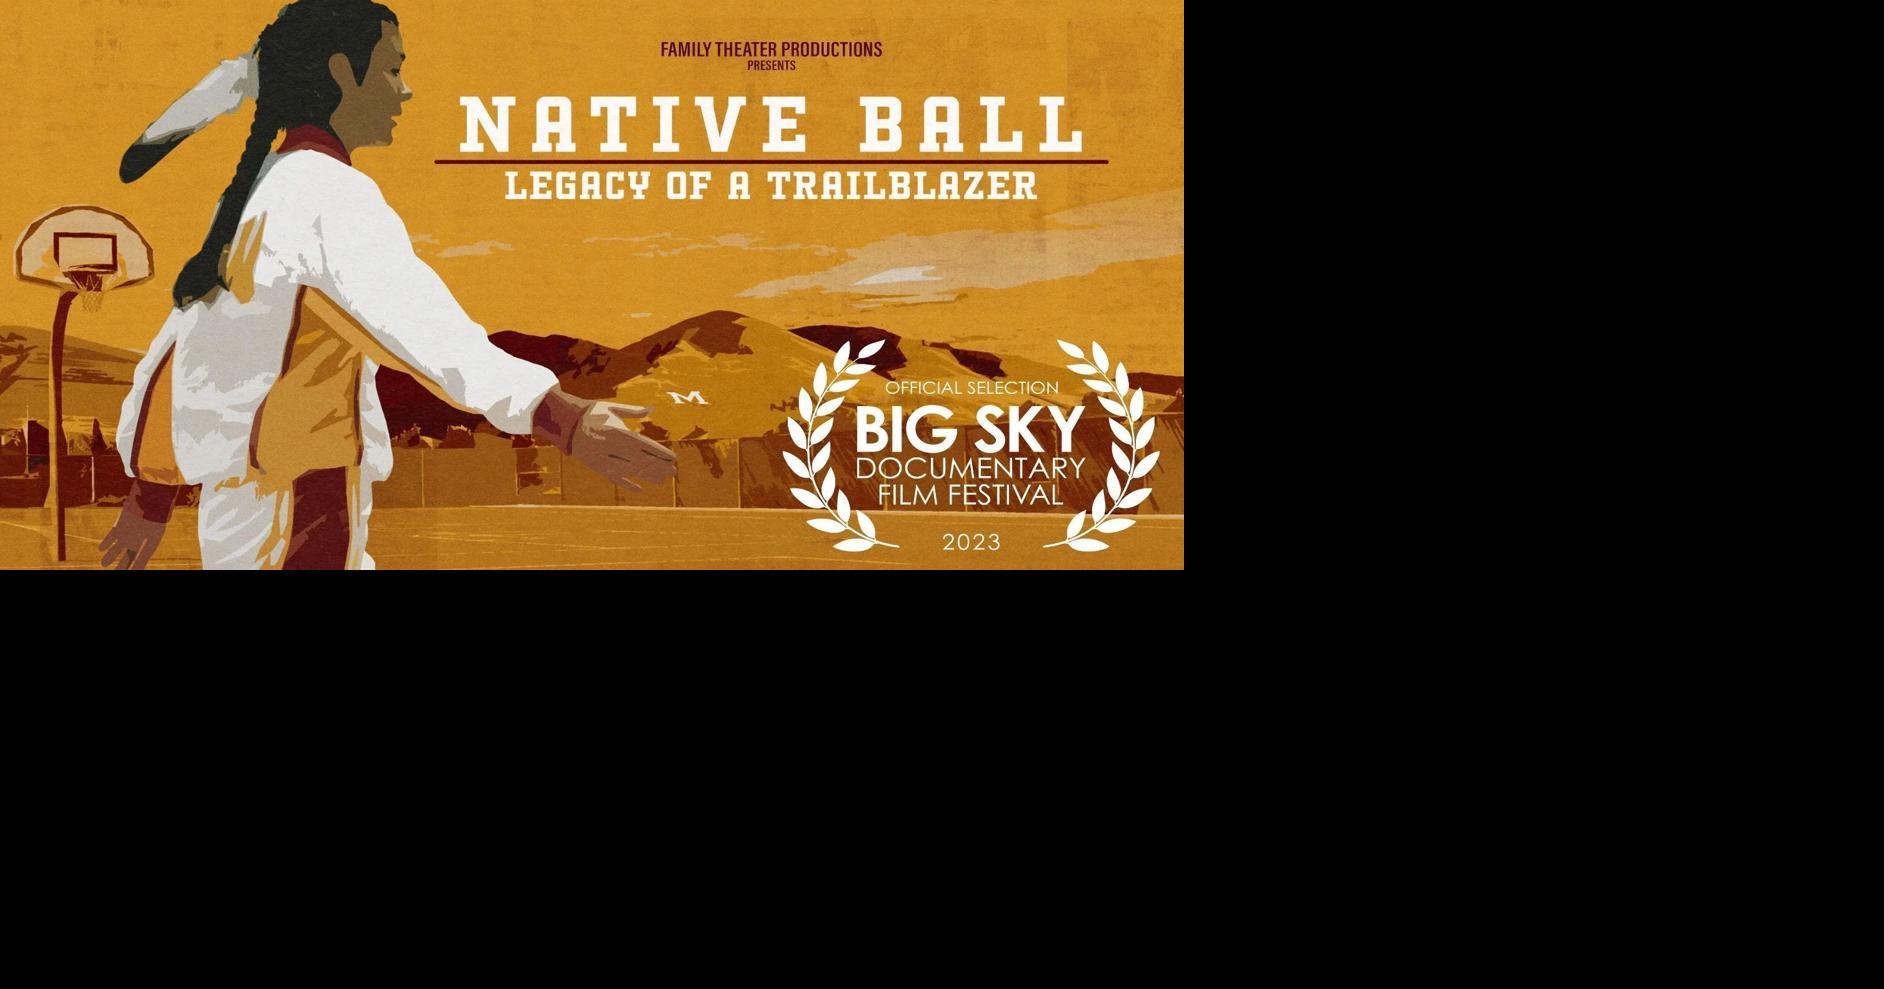 Former Montana Lady Griz Malia Kipp to be featured in Big Sky Film Festival documentary